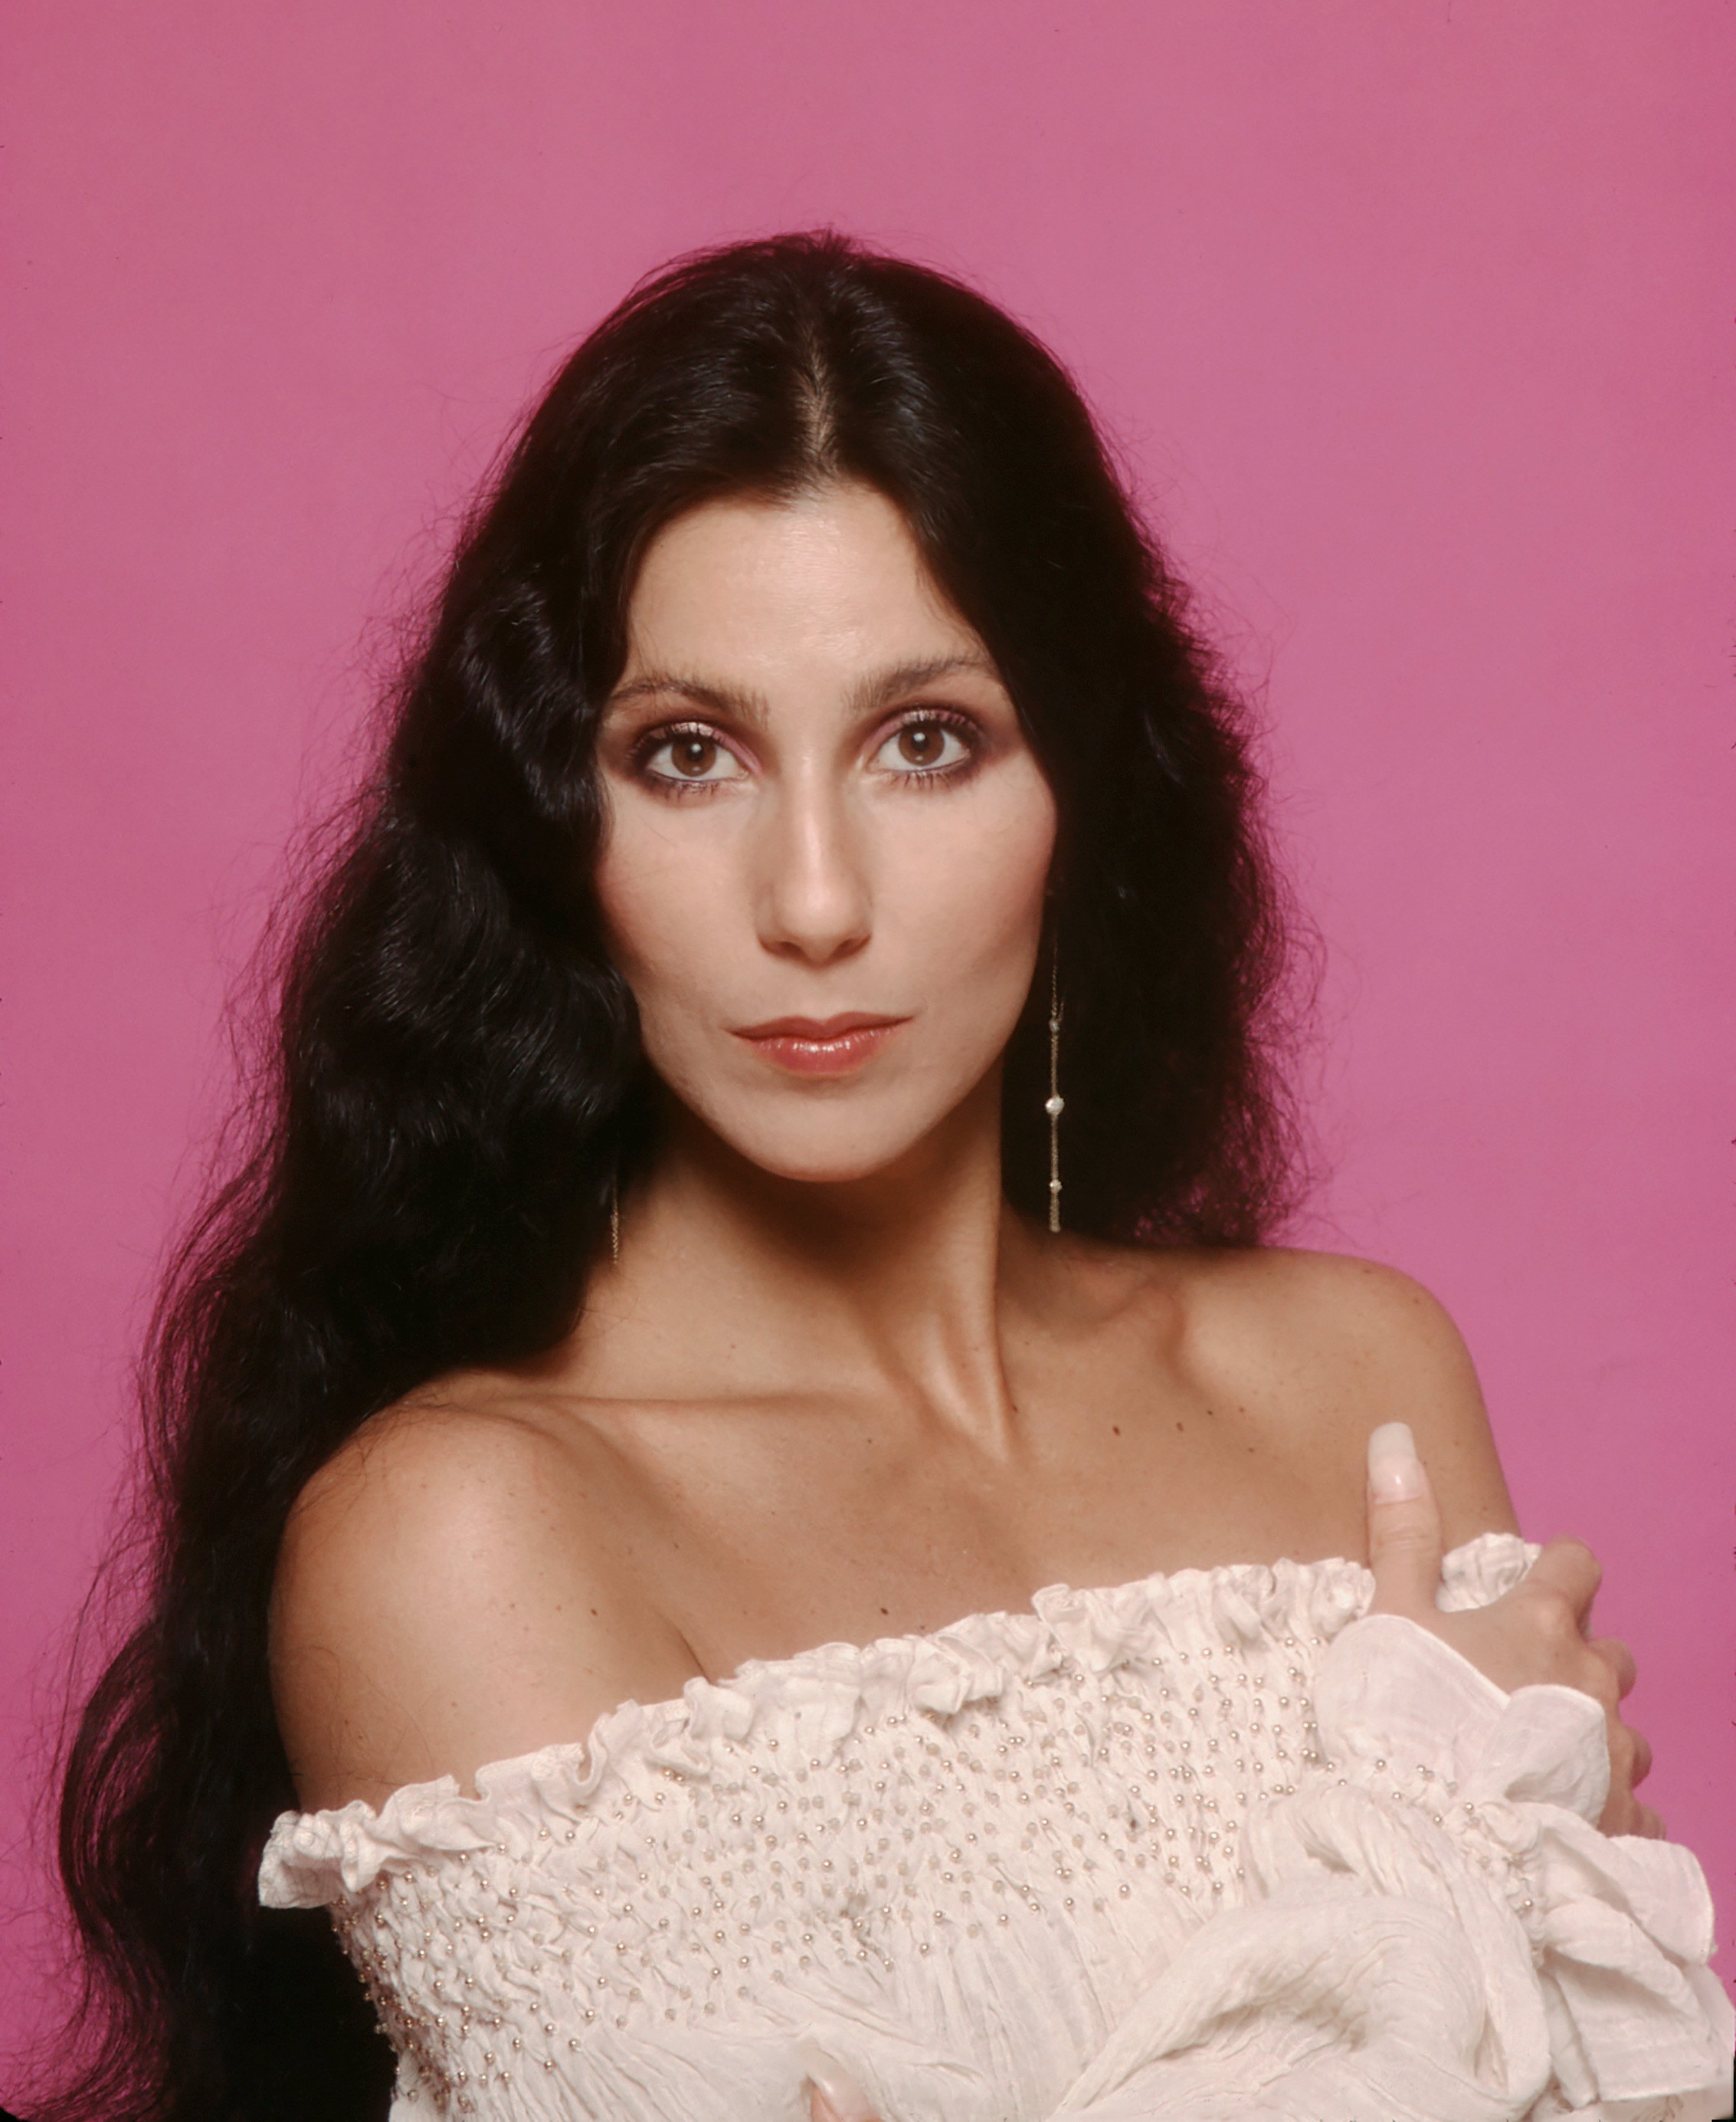 Cher posa durante una sesión de retratos en 1980 en Los Ángeles, California | Fuente: Getty Images